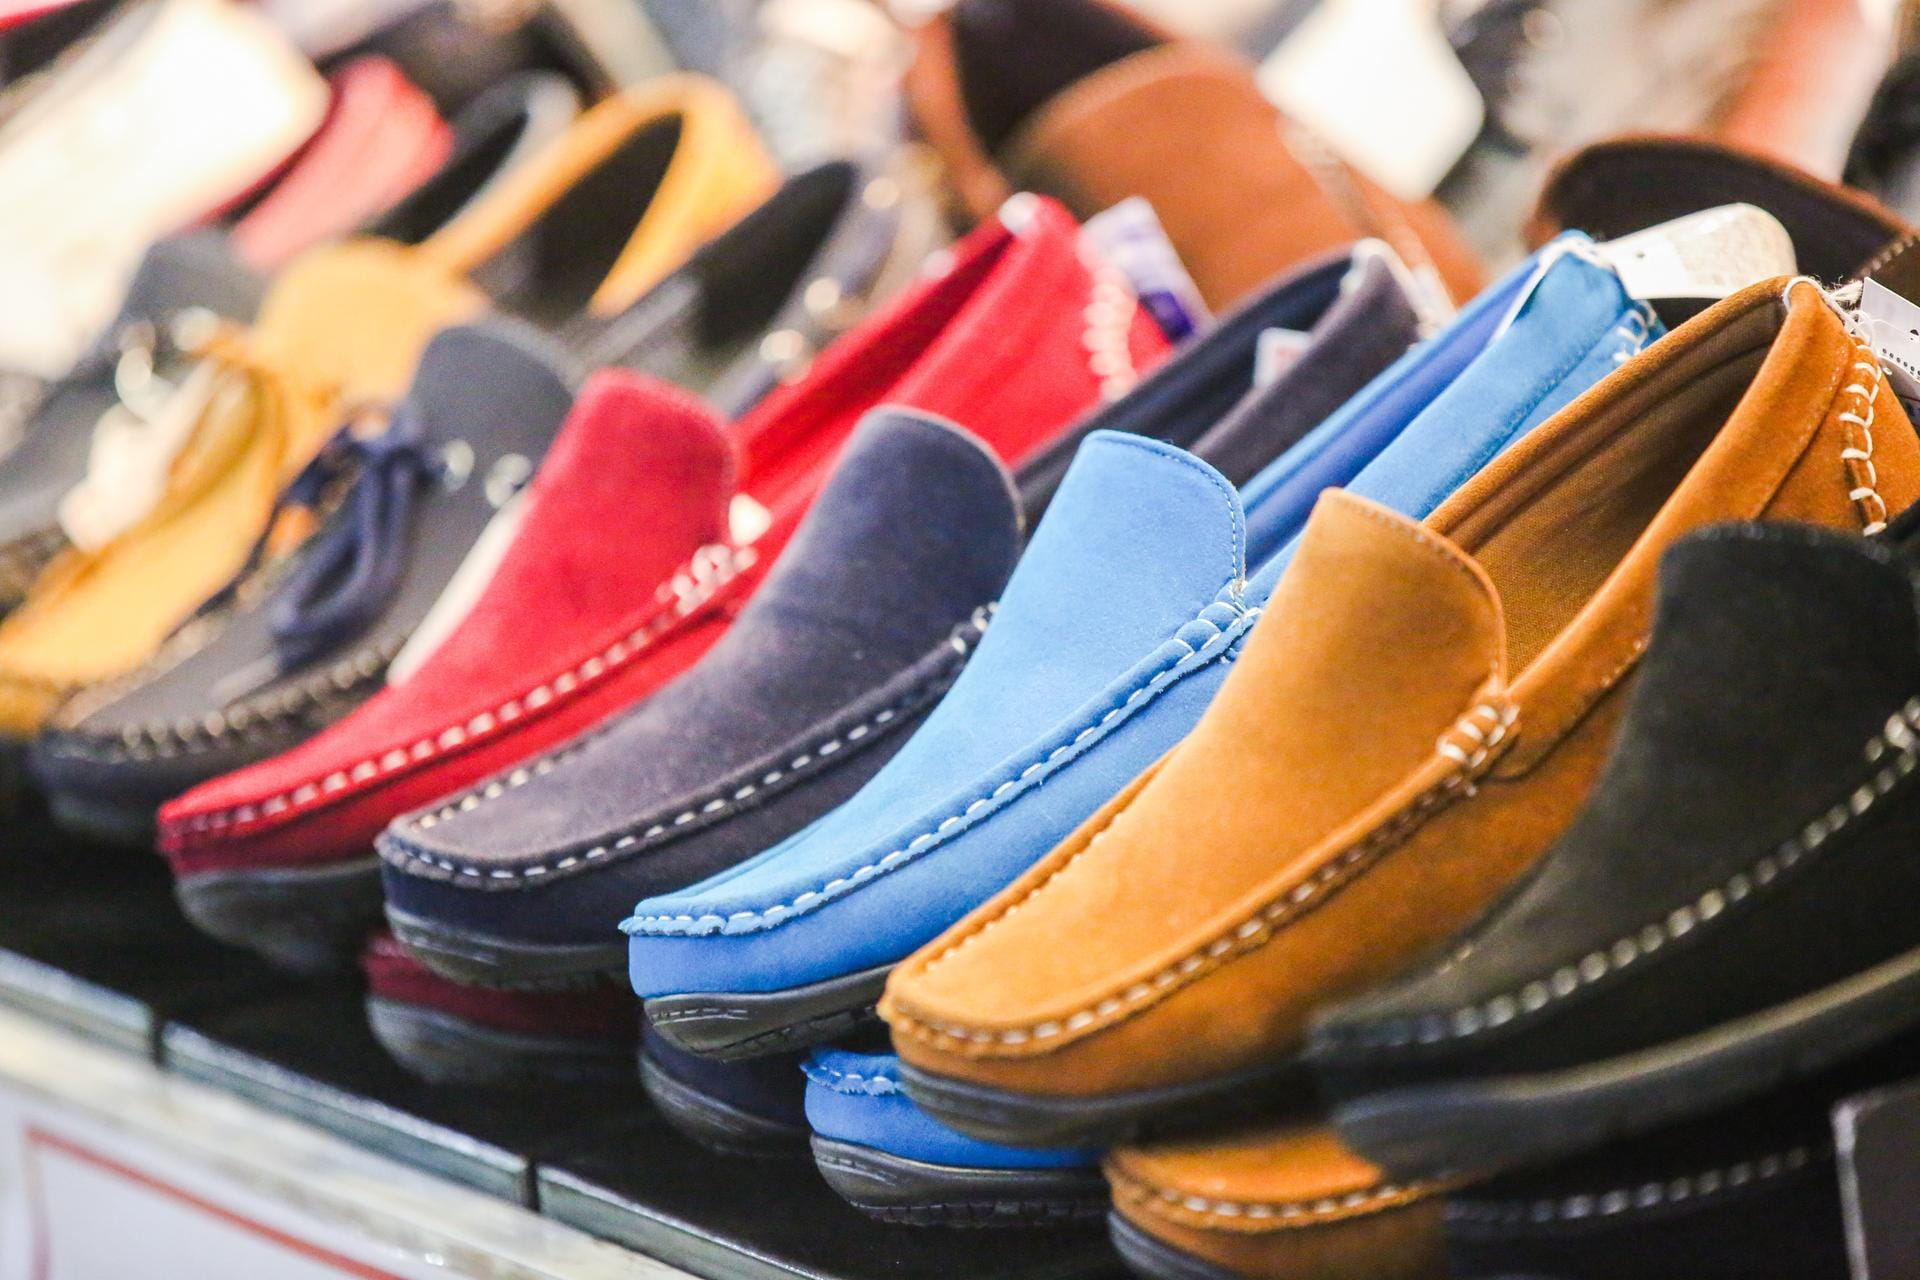 Ungewöhnliches Schuhwerk in knalligen Farben – für viele spricht das für einen geltungssüchtigen Charakter. Die Psychologen fanden heraus: Die Träger führen stabile Beziehungen und sind nicht besonders extrovertiert.